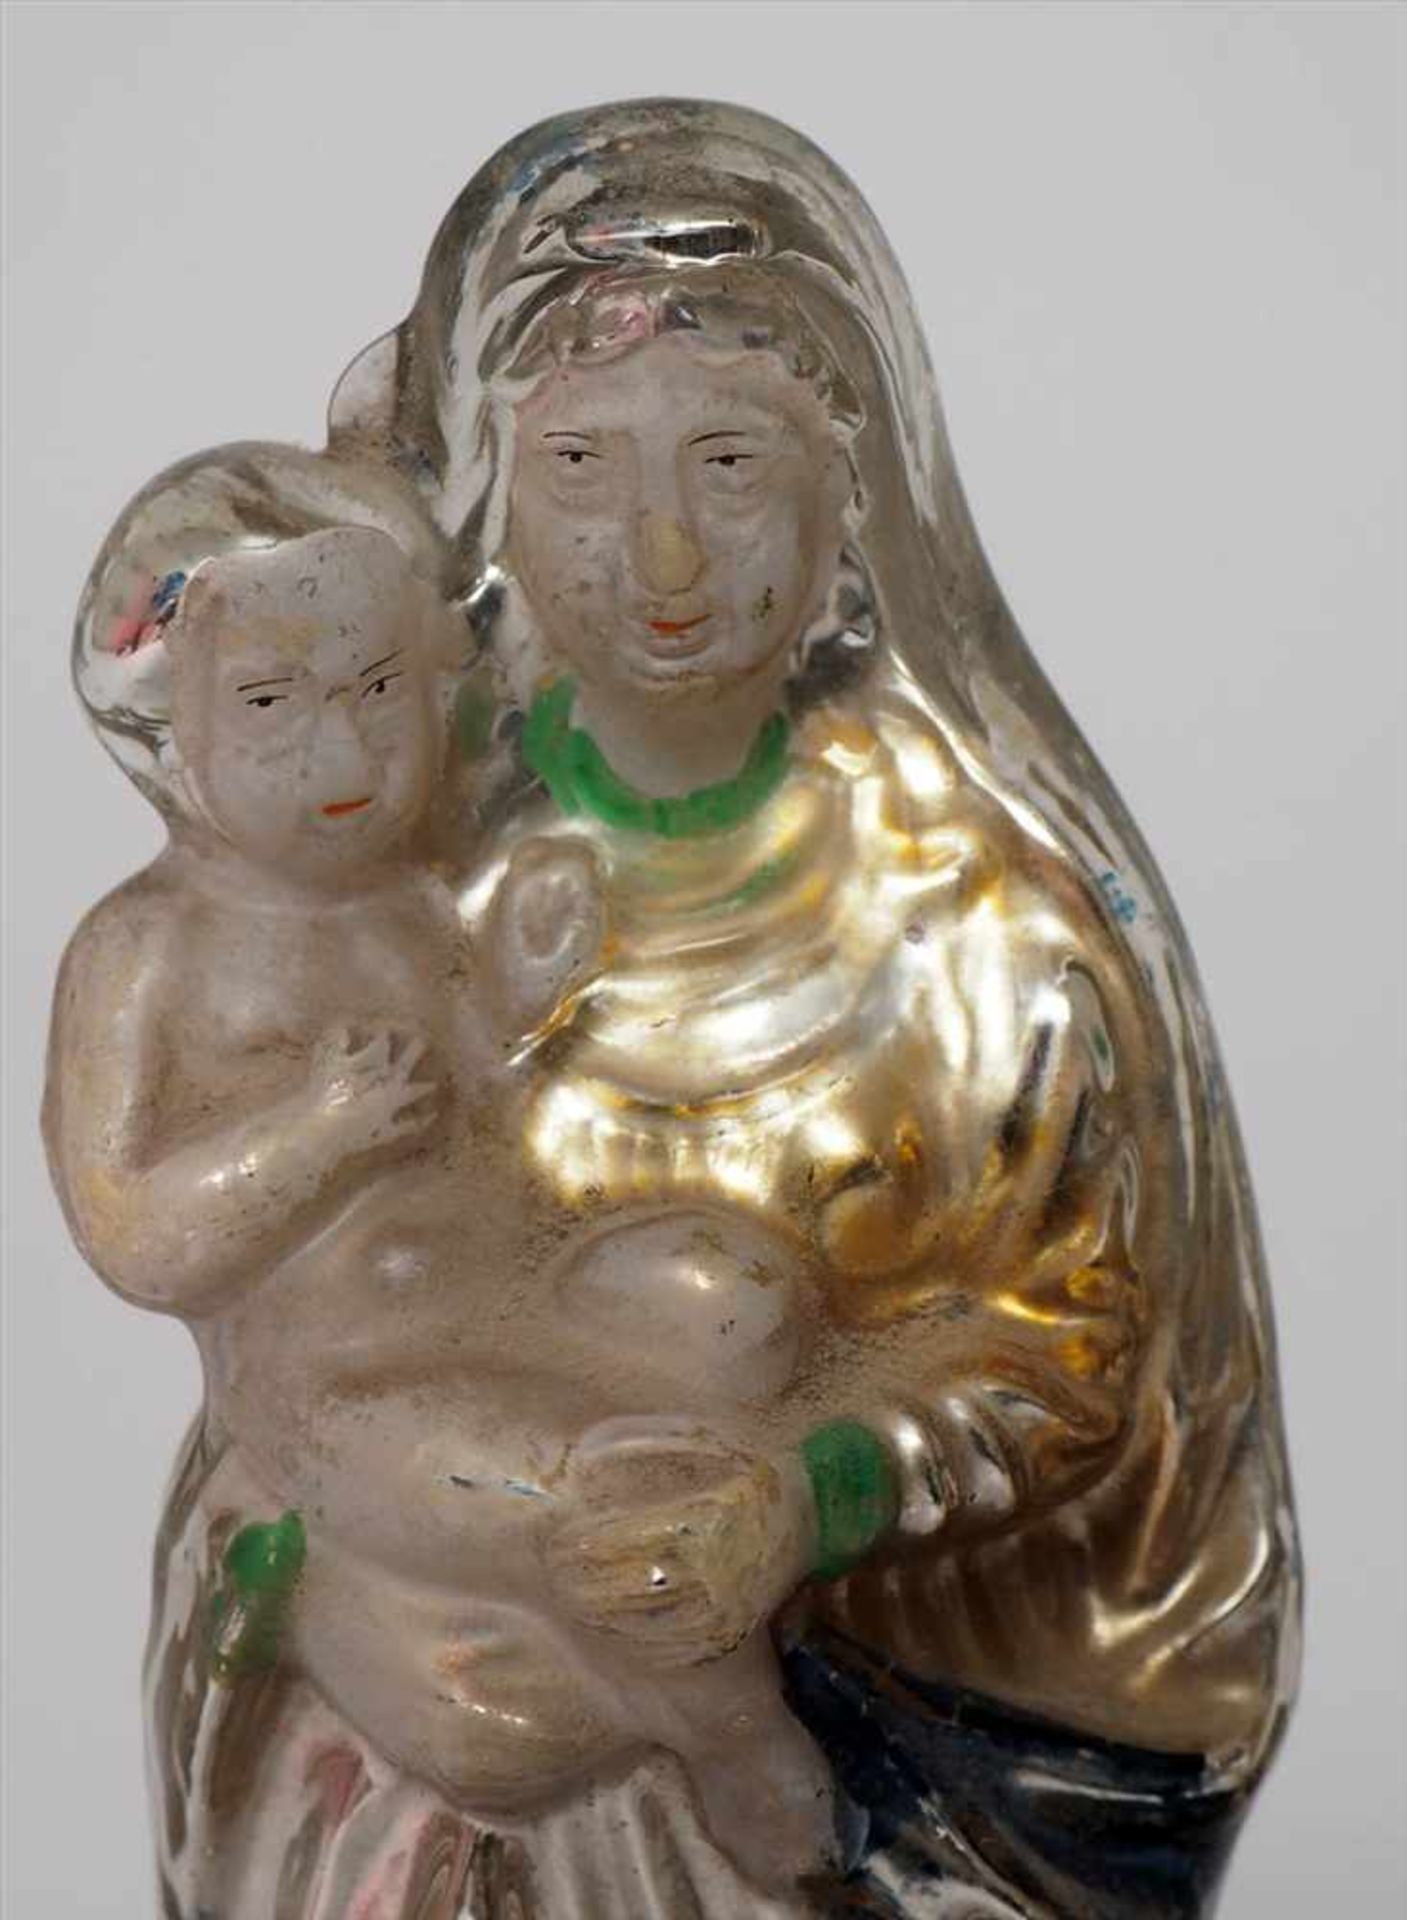 Zwei Teile Bauernsilber, 19.Jhdt.Kruzifix bzw. Madonna mit Kind. Innen versilbert, sparsam bemalt. - Image 2 of 3